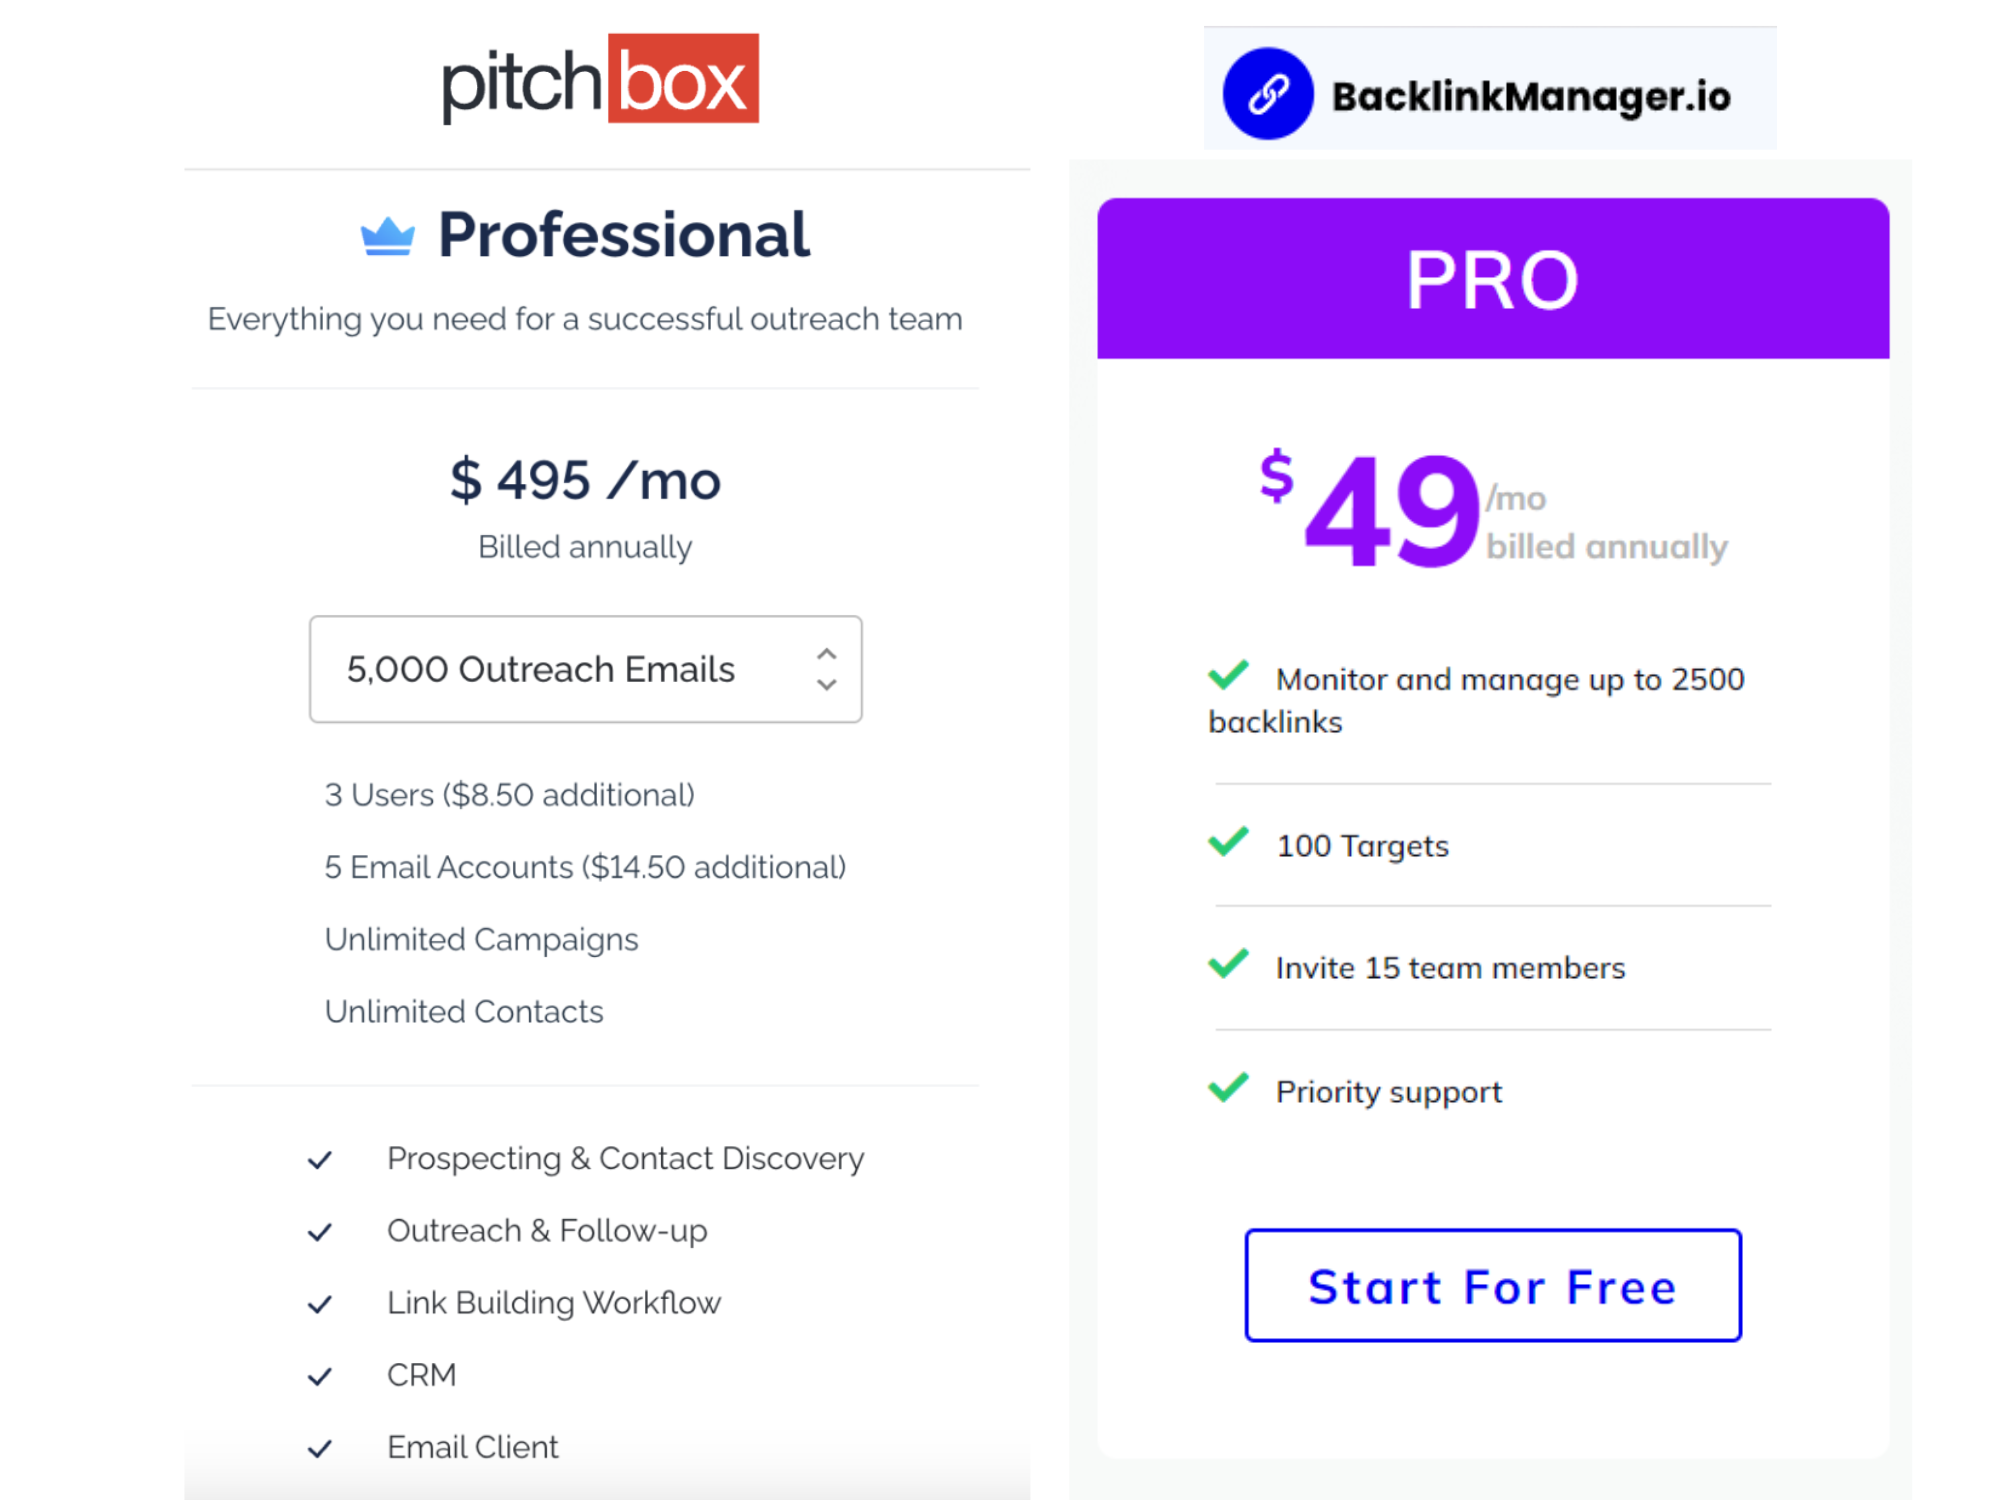 Backlink Manager Pro vs Pitchbox Professional